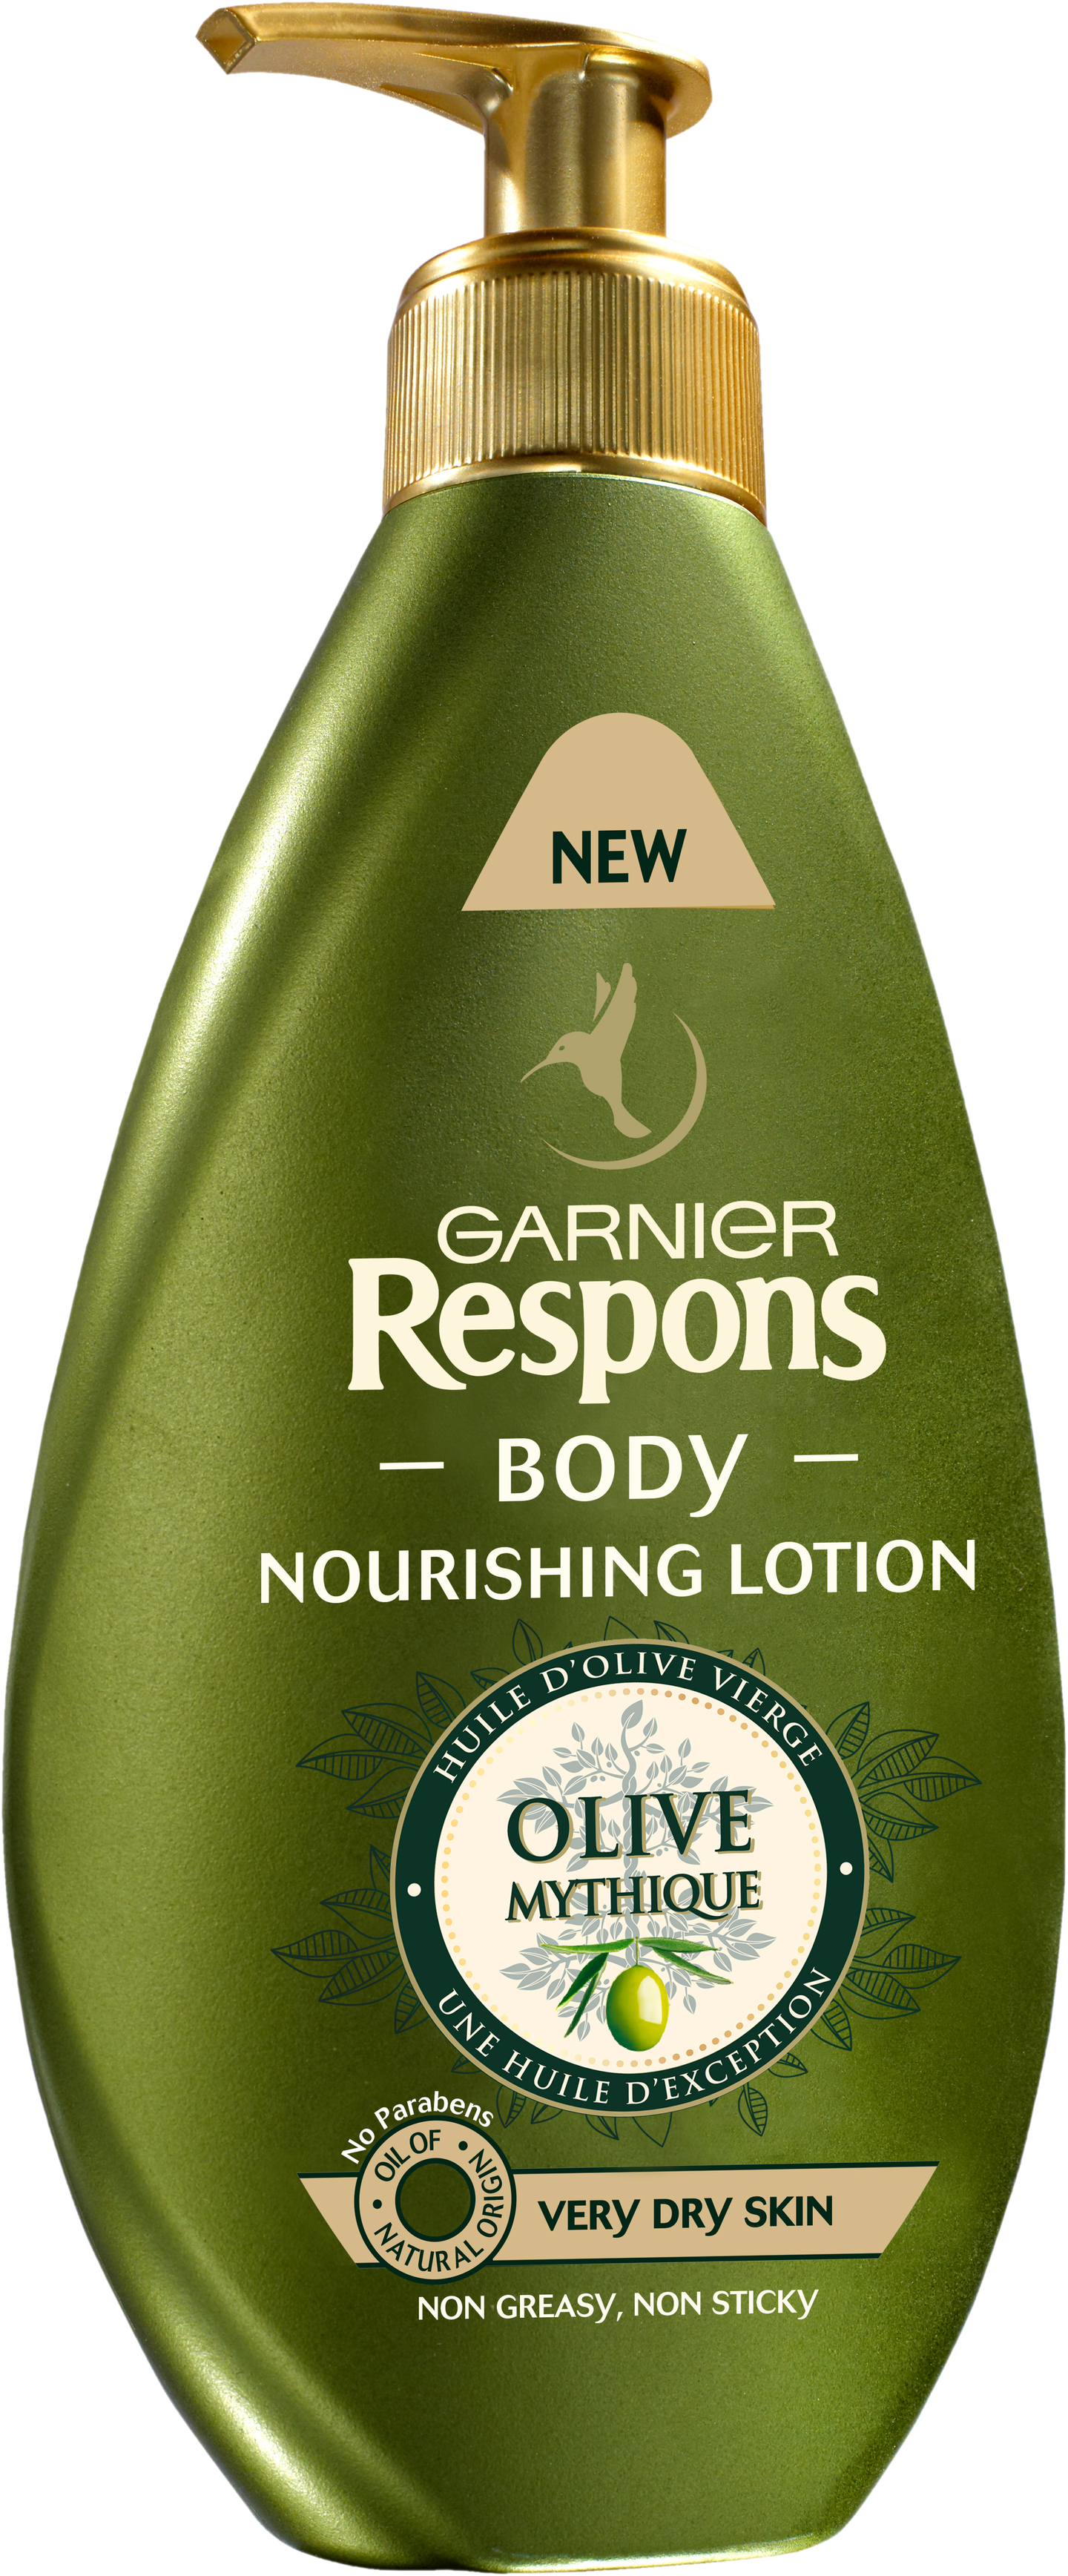 Garnier Respons Body 400 ml Mythic Olive Nourishing lotion vartaloemulsio erittäin kuivalle iholle